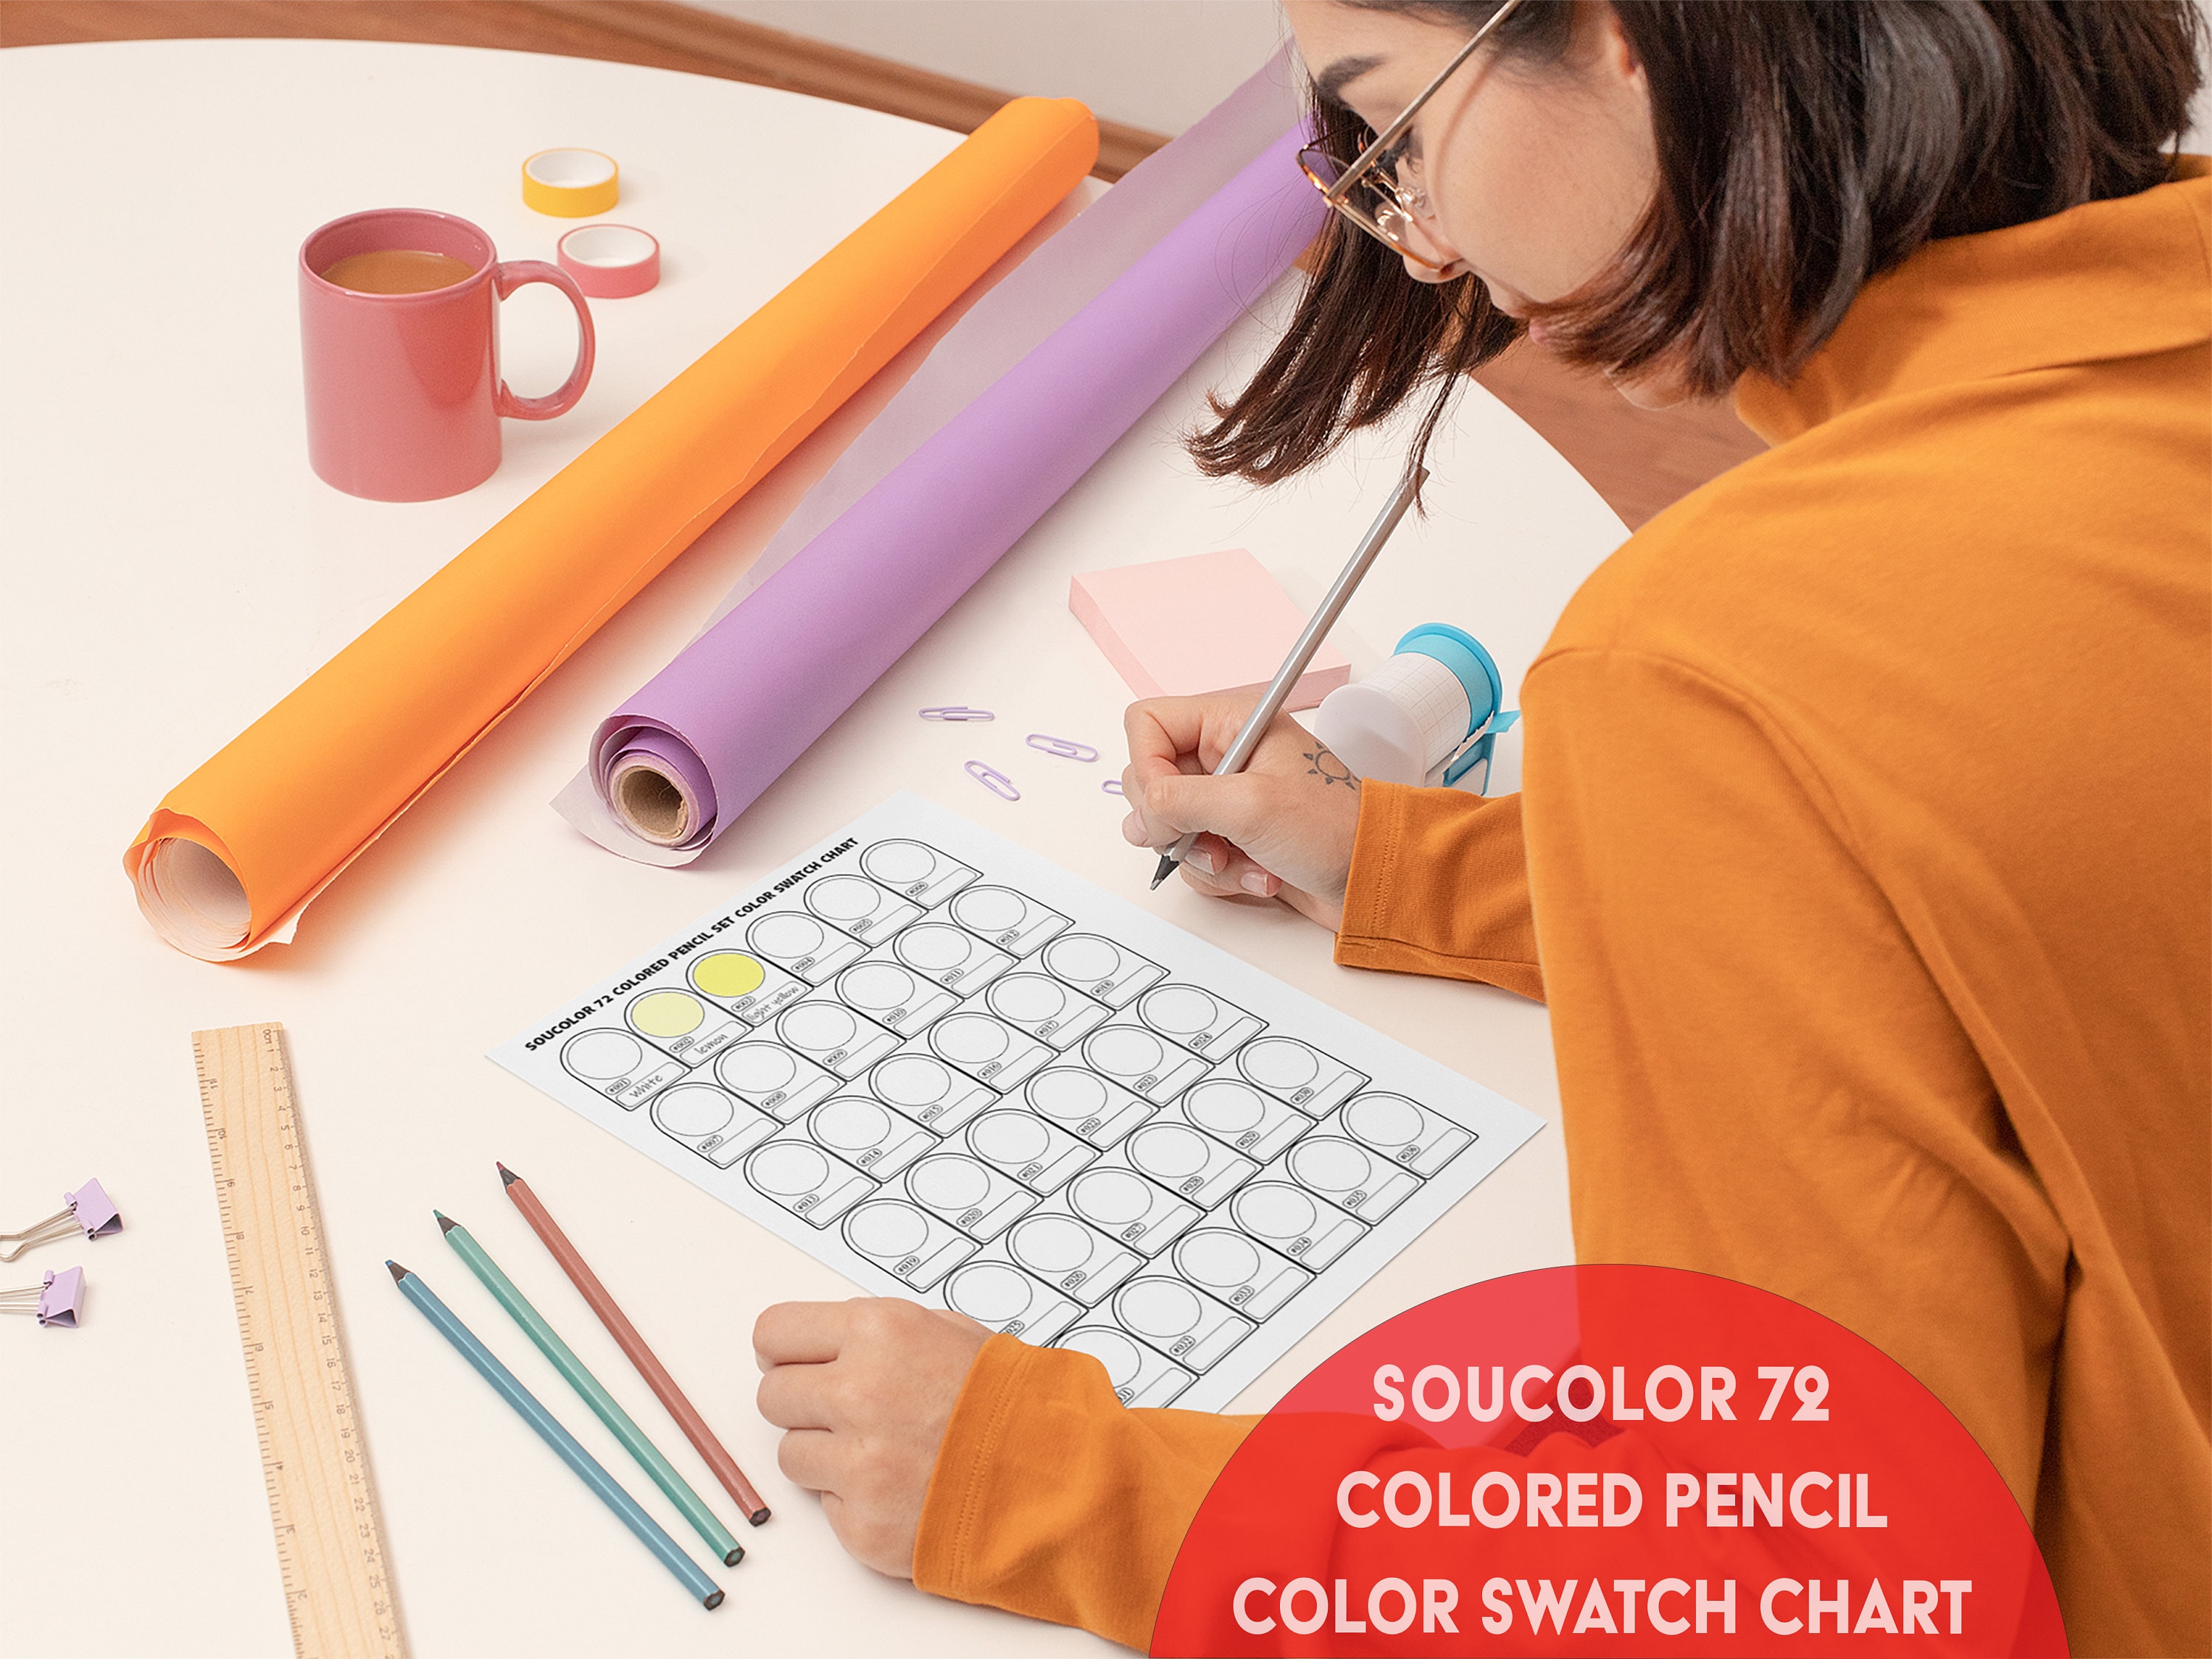 Soucolor Colored Pencils